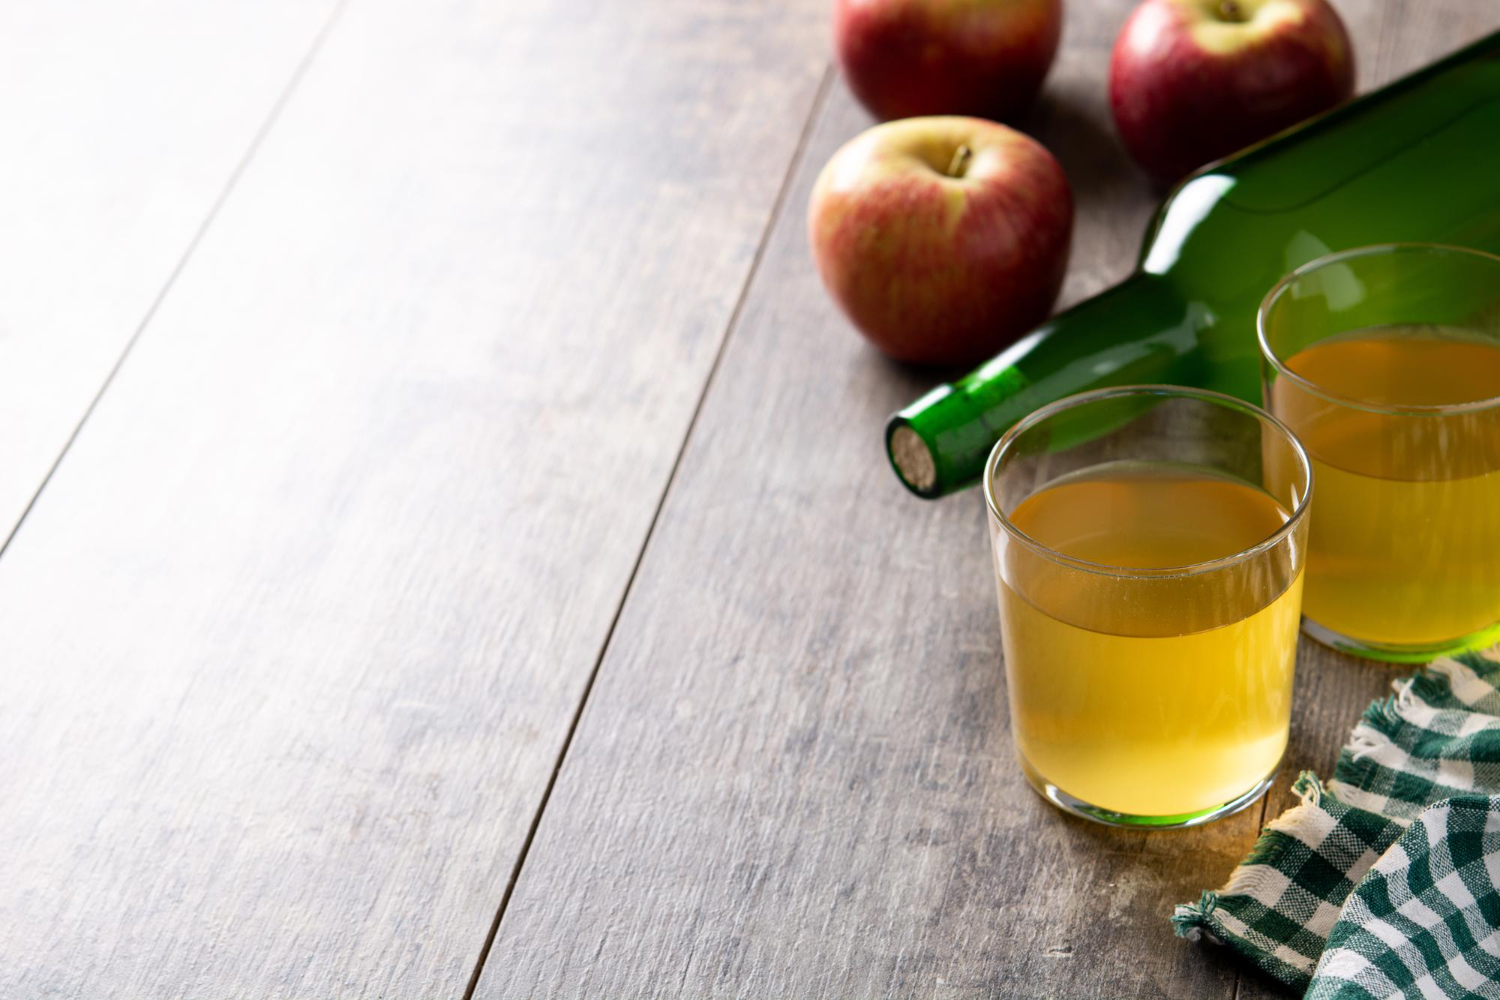 リンゴ酢ダイエットと他のダイエット方法の違い